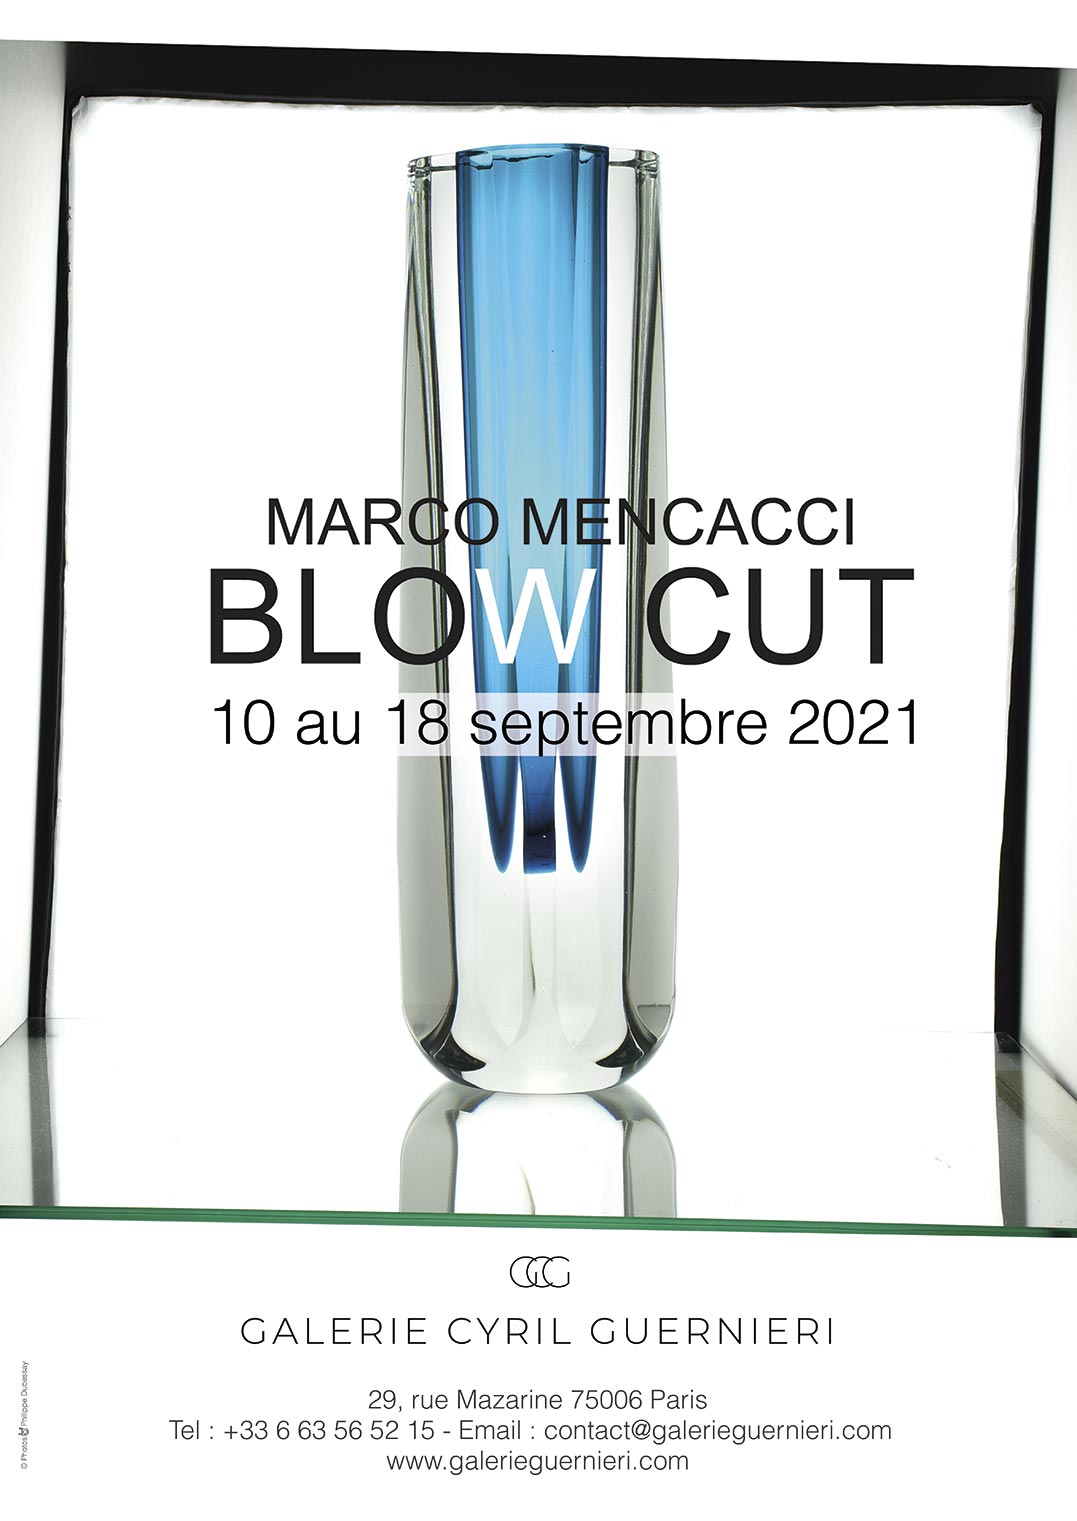 Affiche de l'exposition Blow Cut de Marco Mencacci, Galerie Cyril Guernieri, Paris 2021